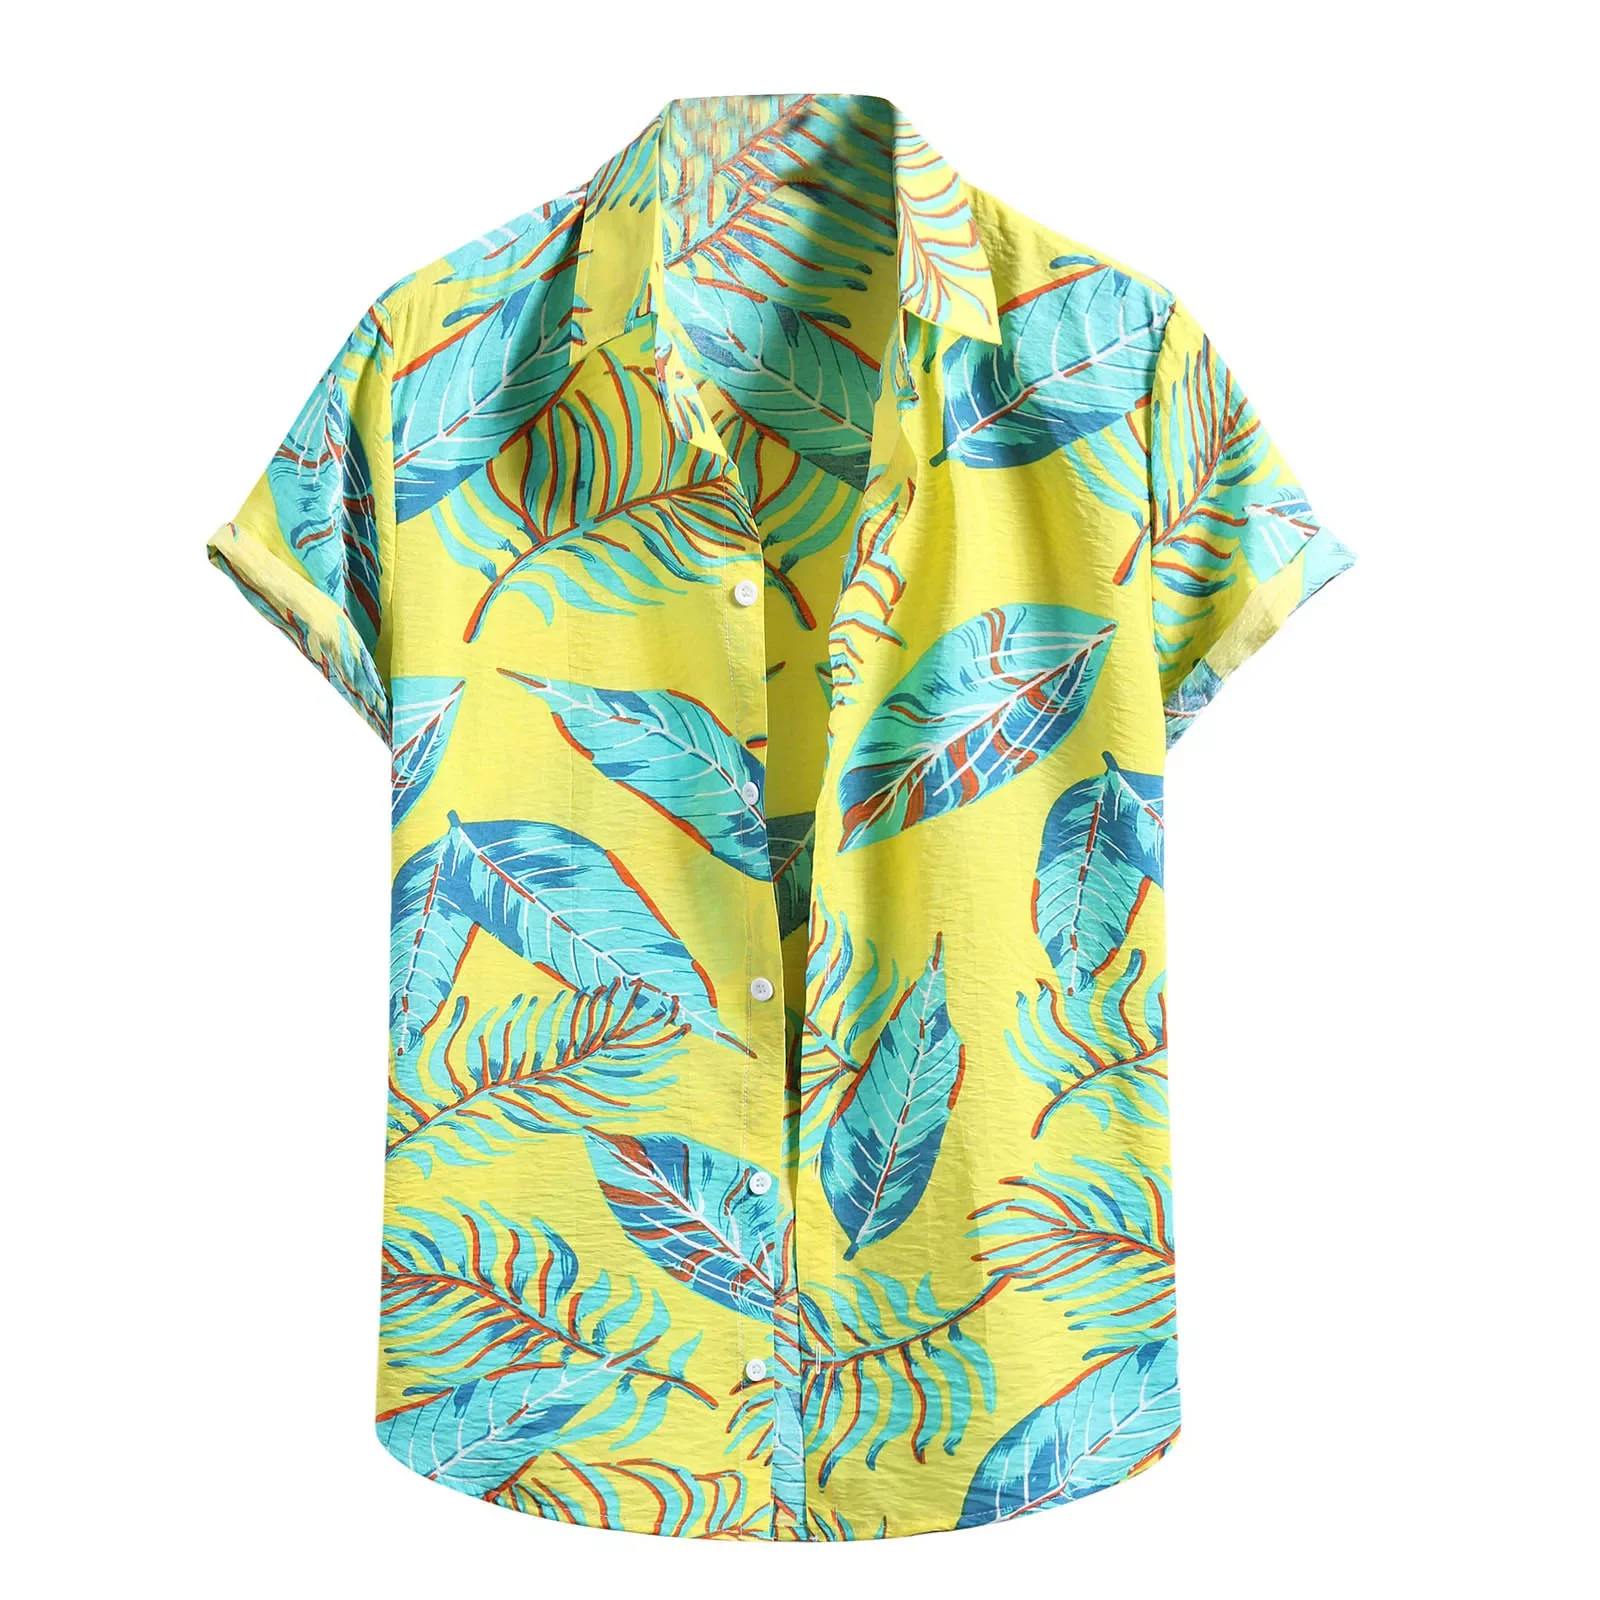 Рубашка мужская с цветочным принтом, модная хлопково-Льняная блузка с короткими рукавами, на пуговицах, пляжный топ, лето 2021